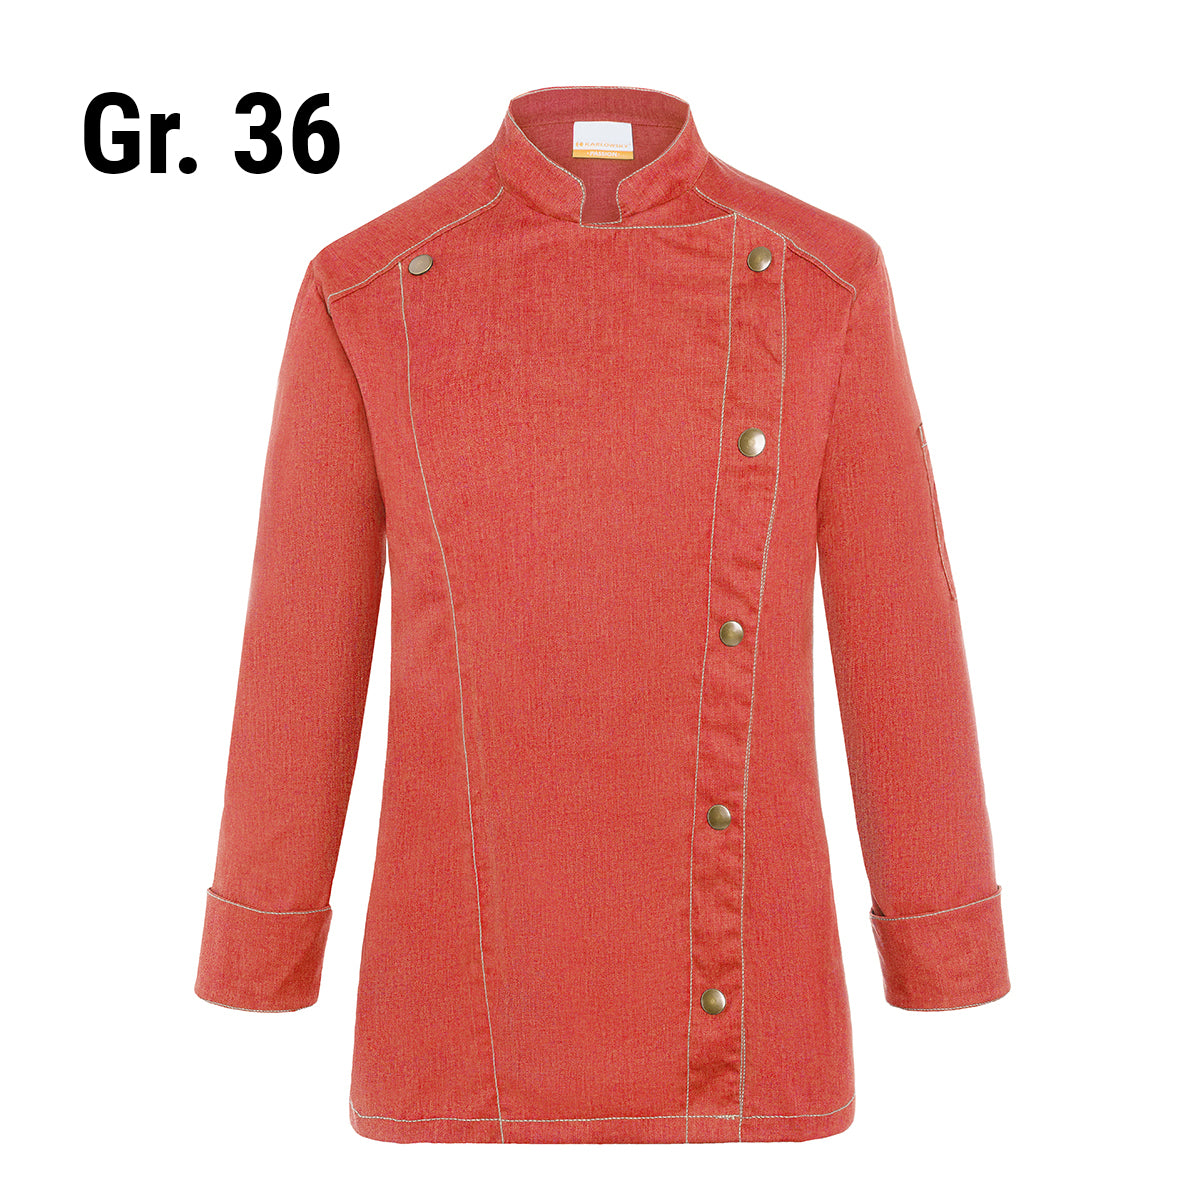 (6 stk) Karlowsky DAME kokkejakke i jeans-stil - vintage rød - størrelse: 36